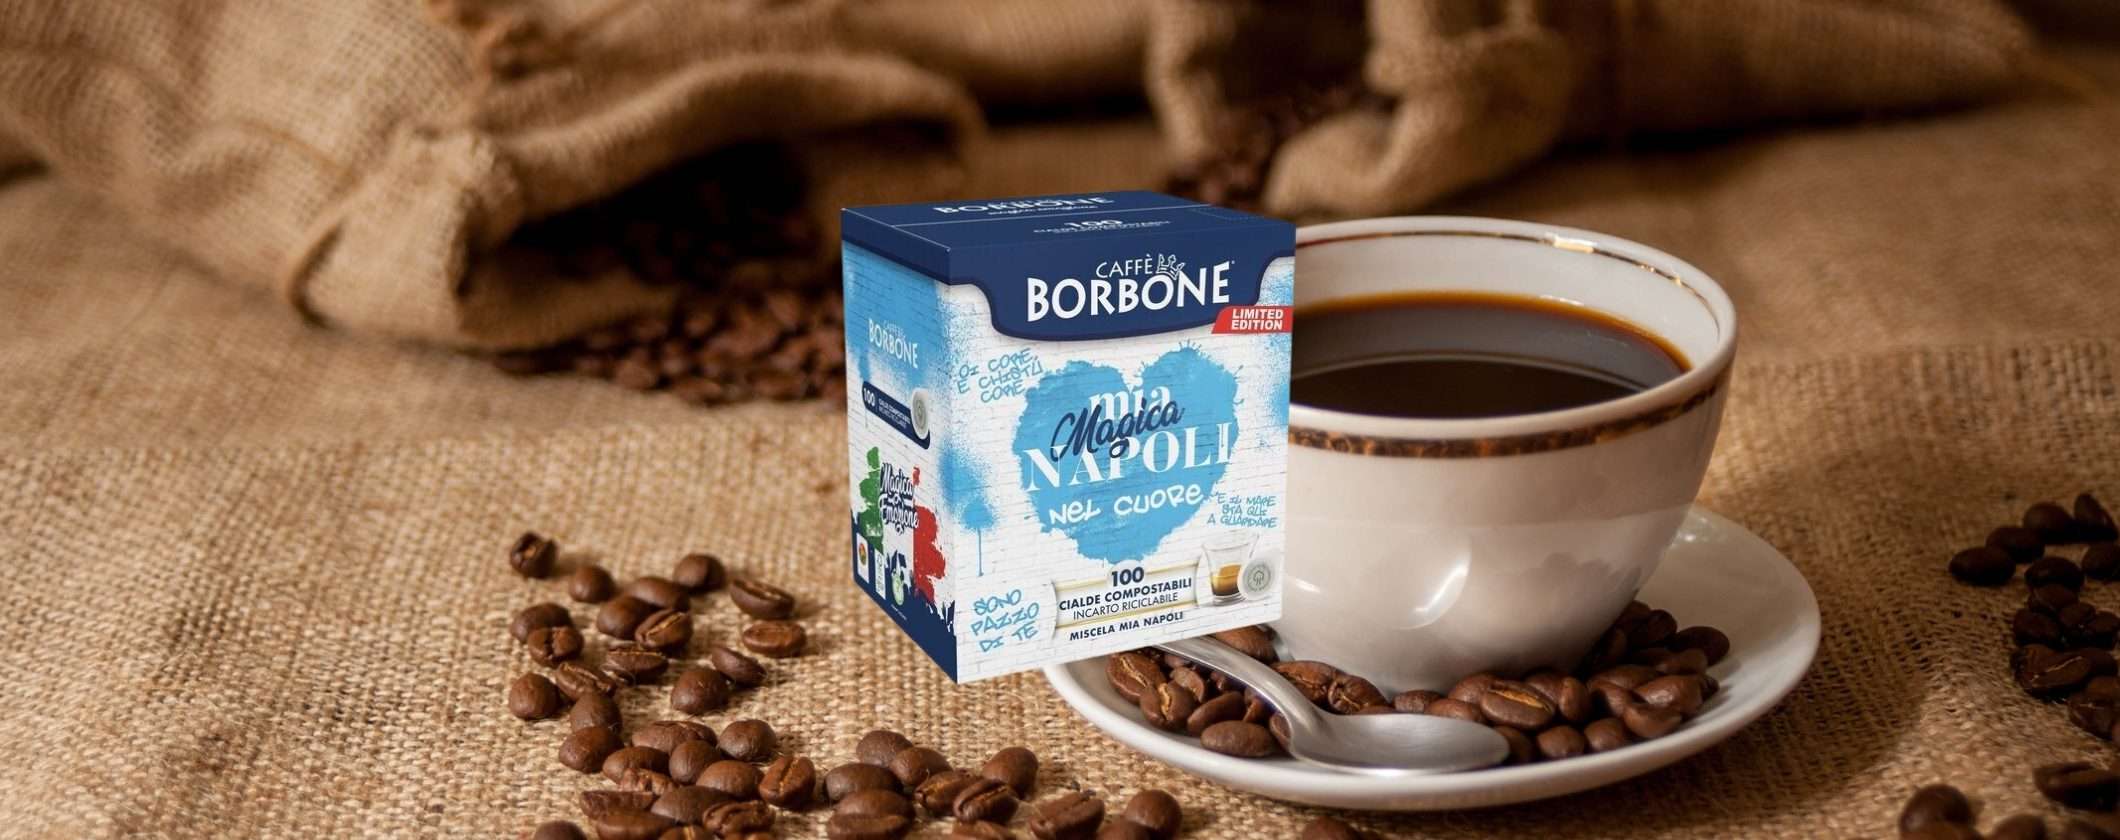 Cialde Caffè Borbone: il vero espresso napoletano a 14 centesimi